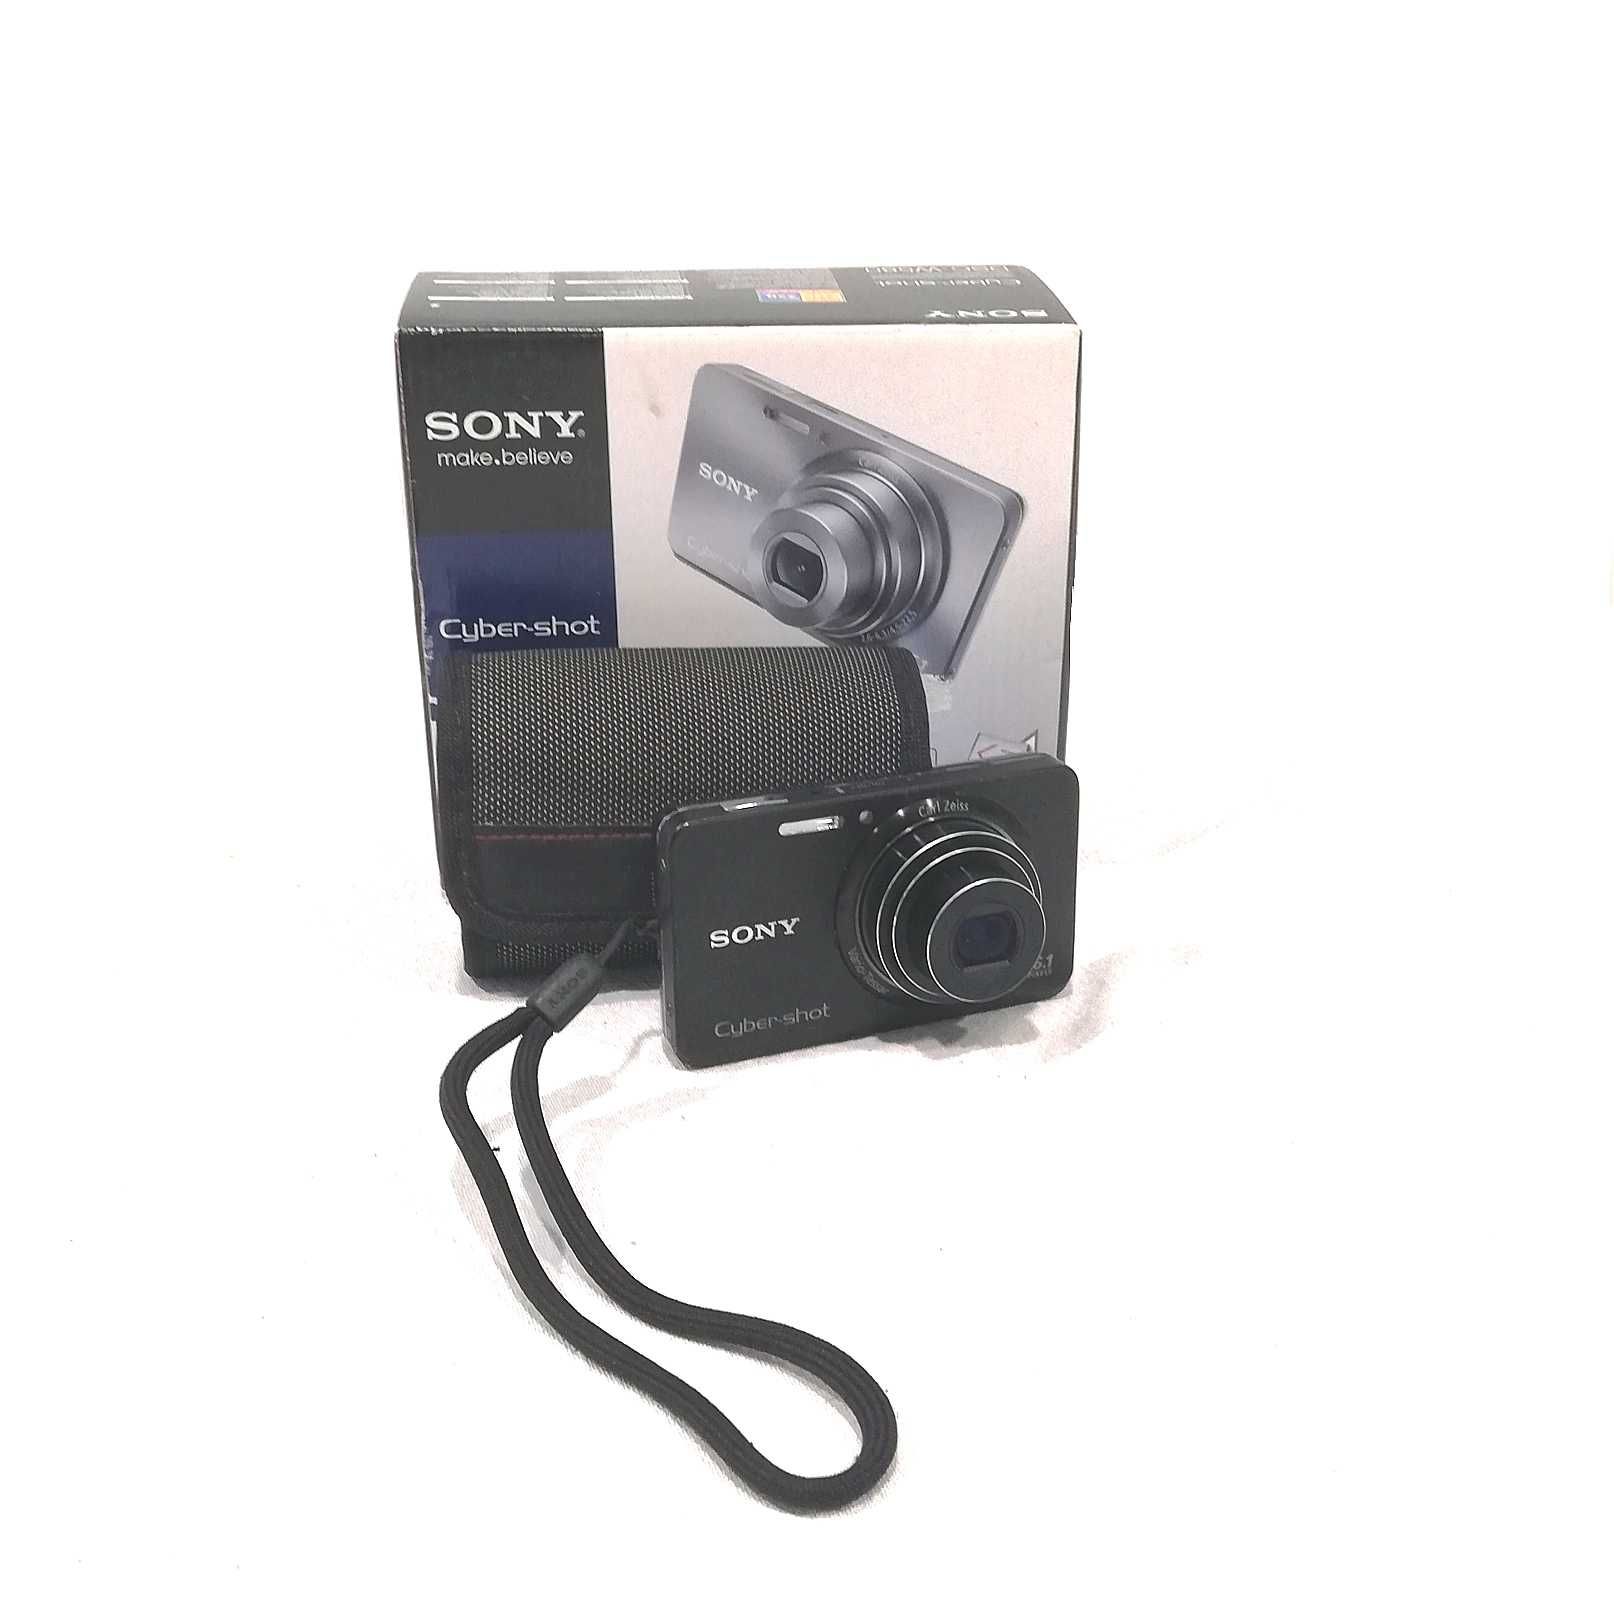 Sony Cyber-shot DSC-W580